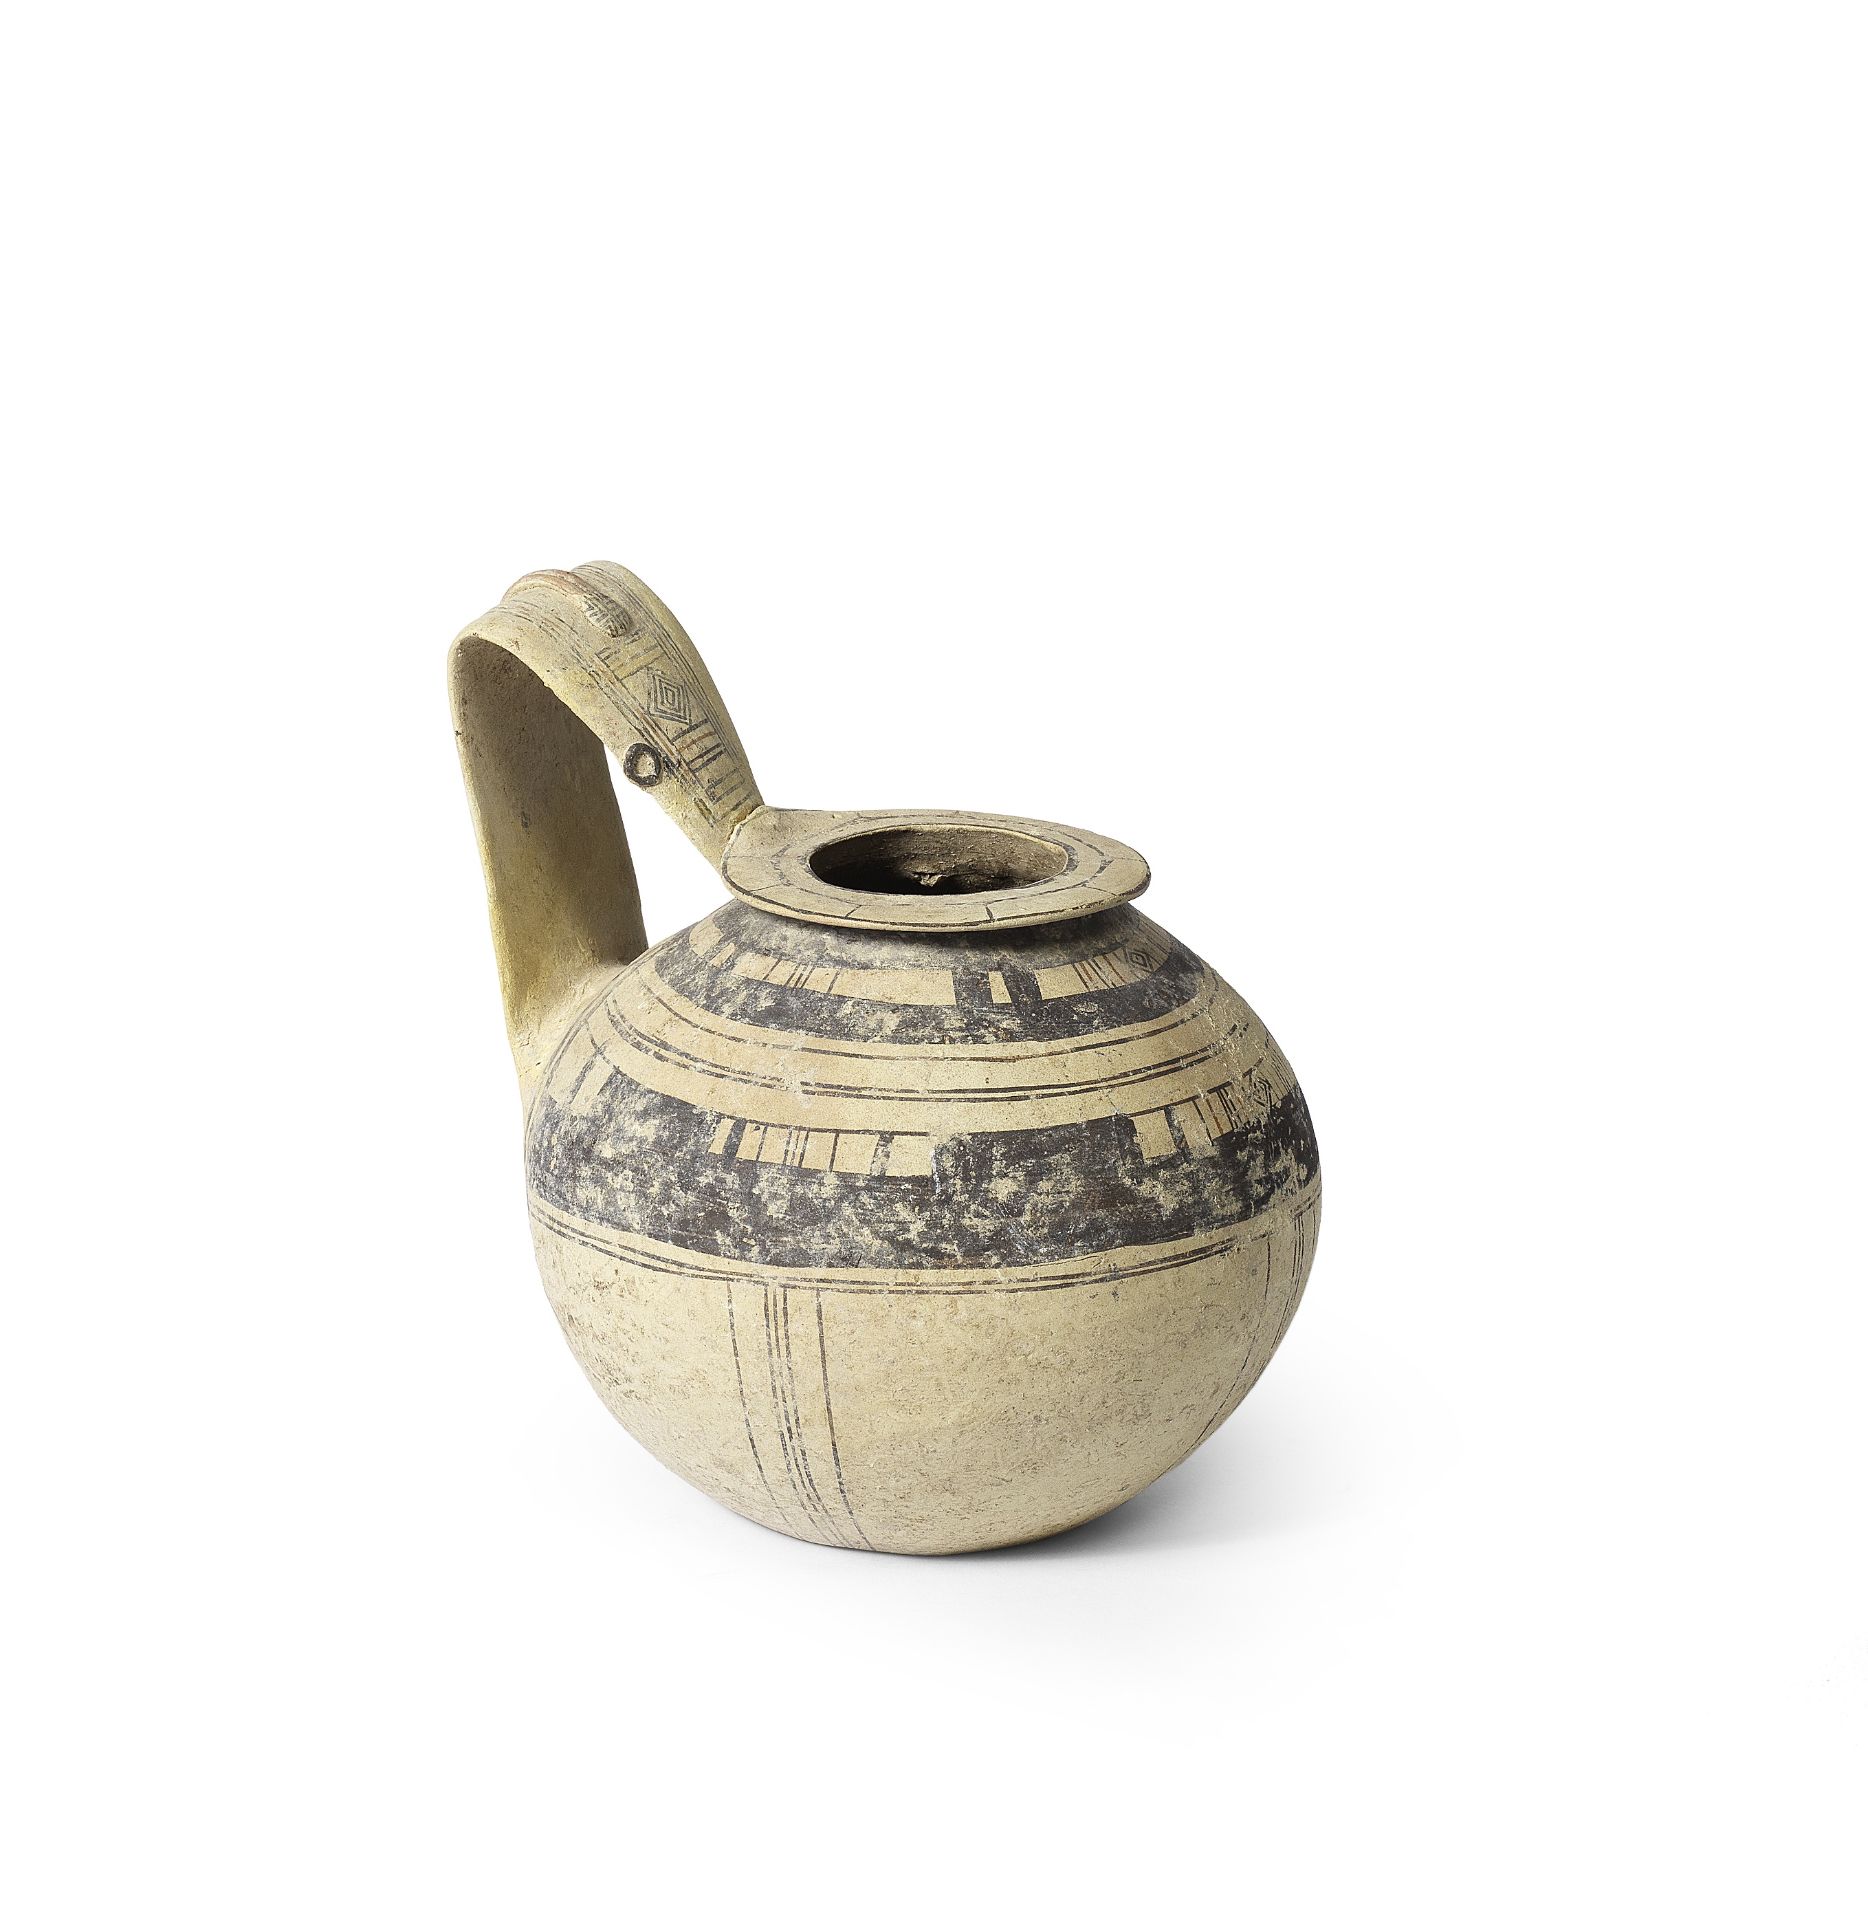 A Daunian pottery jug